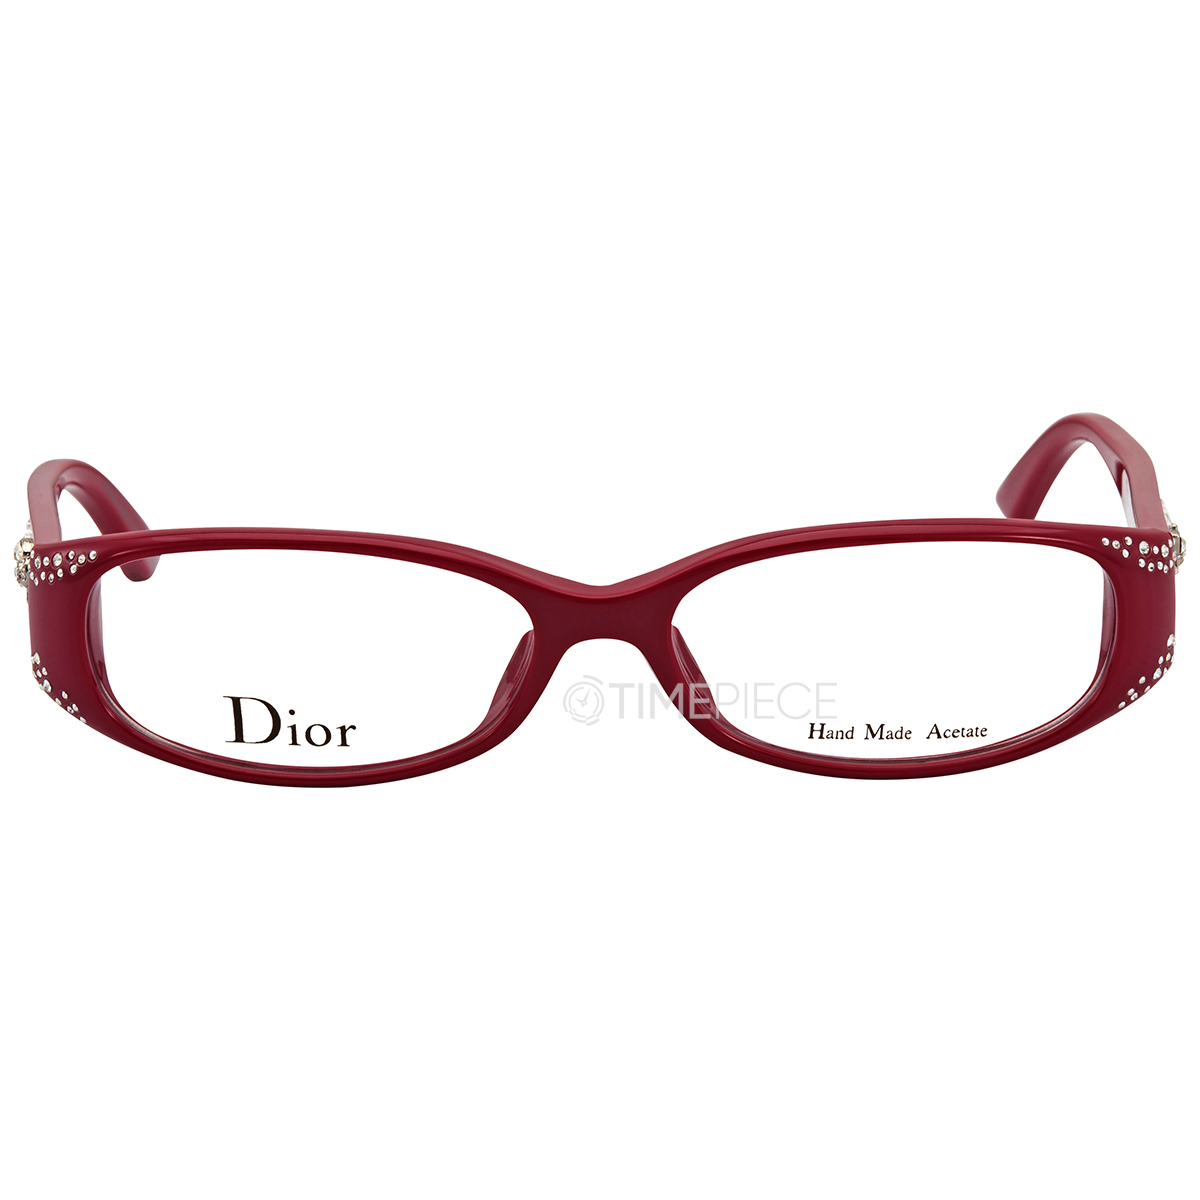 Dior Eyewear Glasses  Frames for Men  Shop Now on FARFETCH